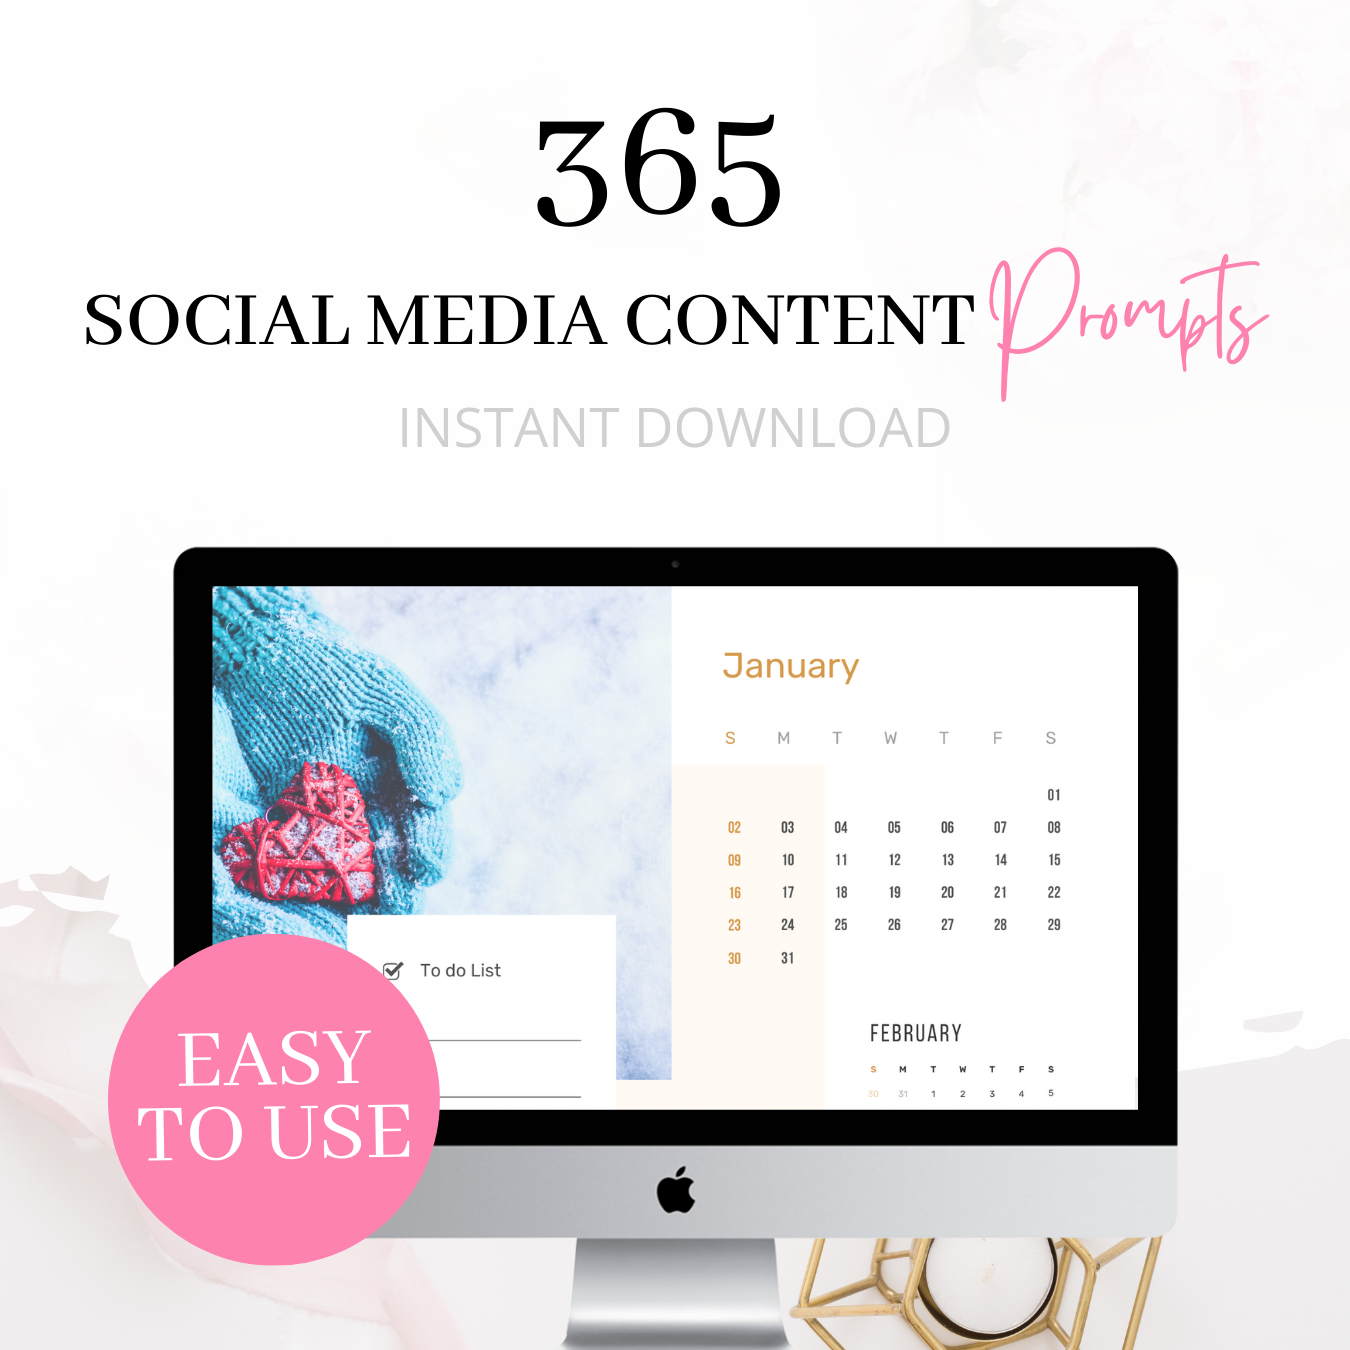 365 Social Media Content Prompts